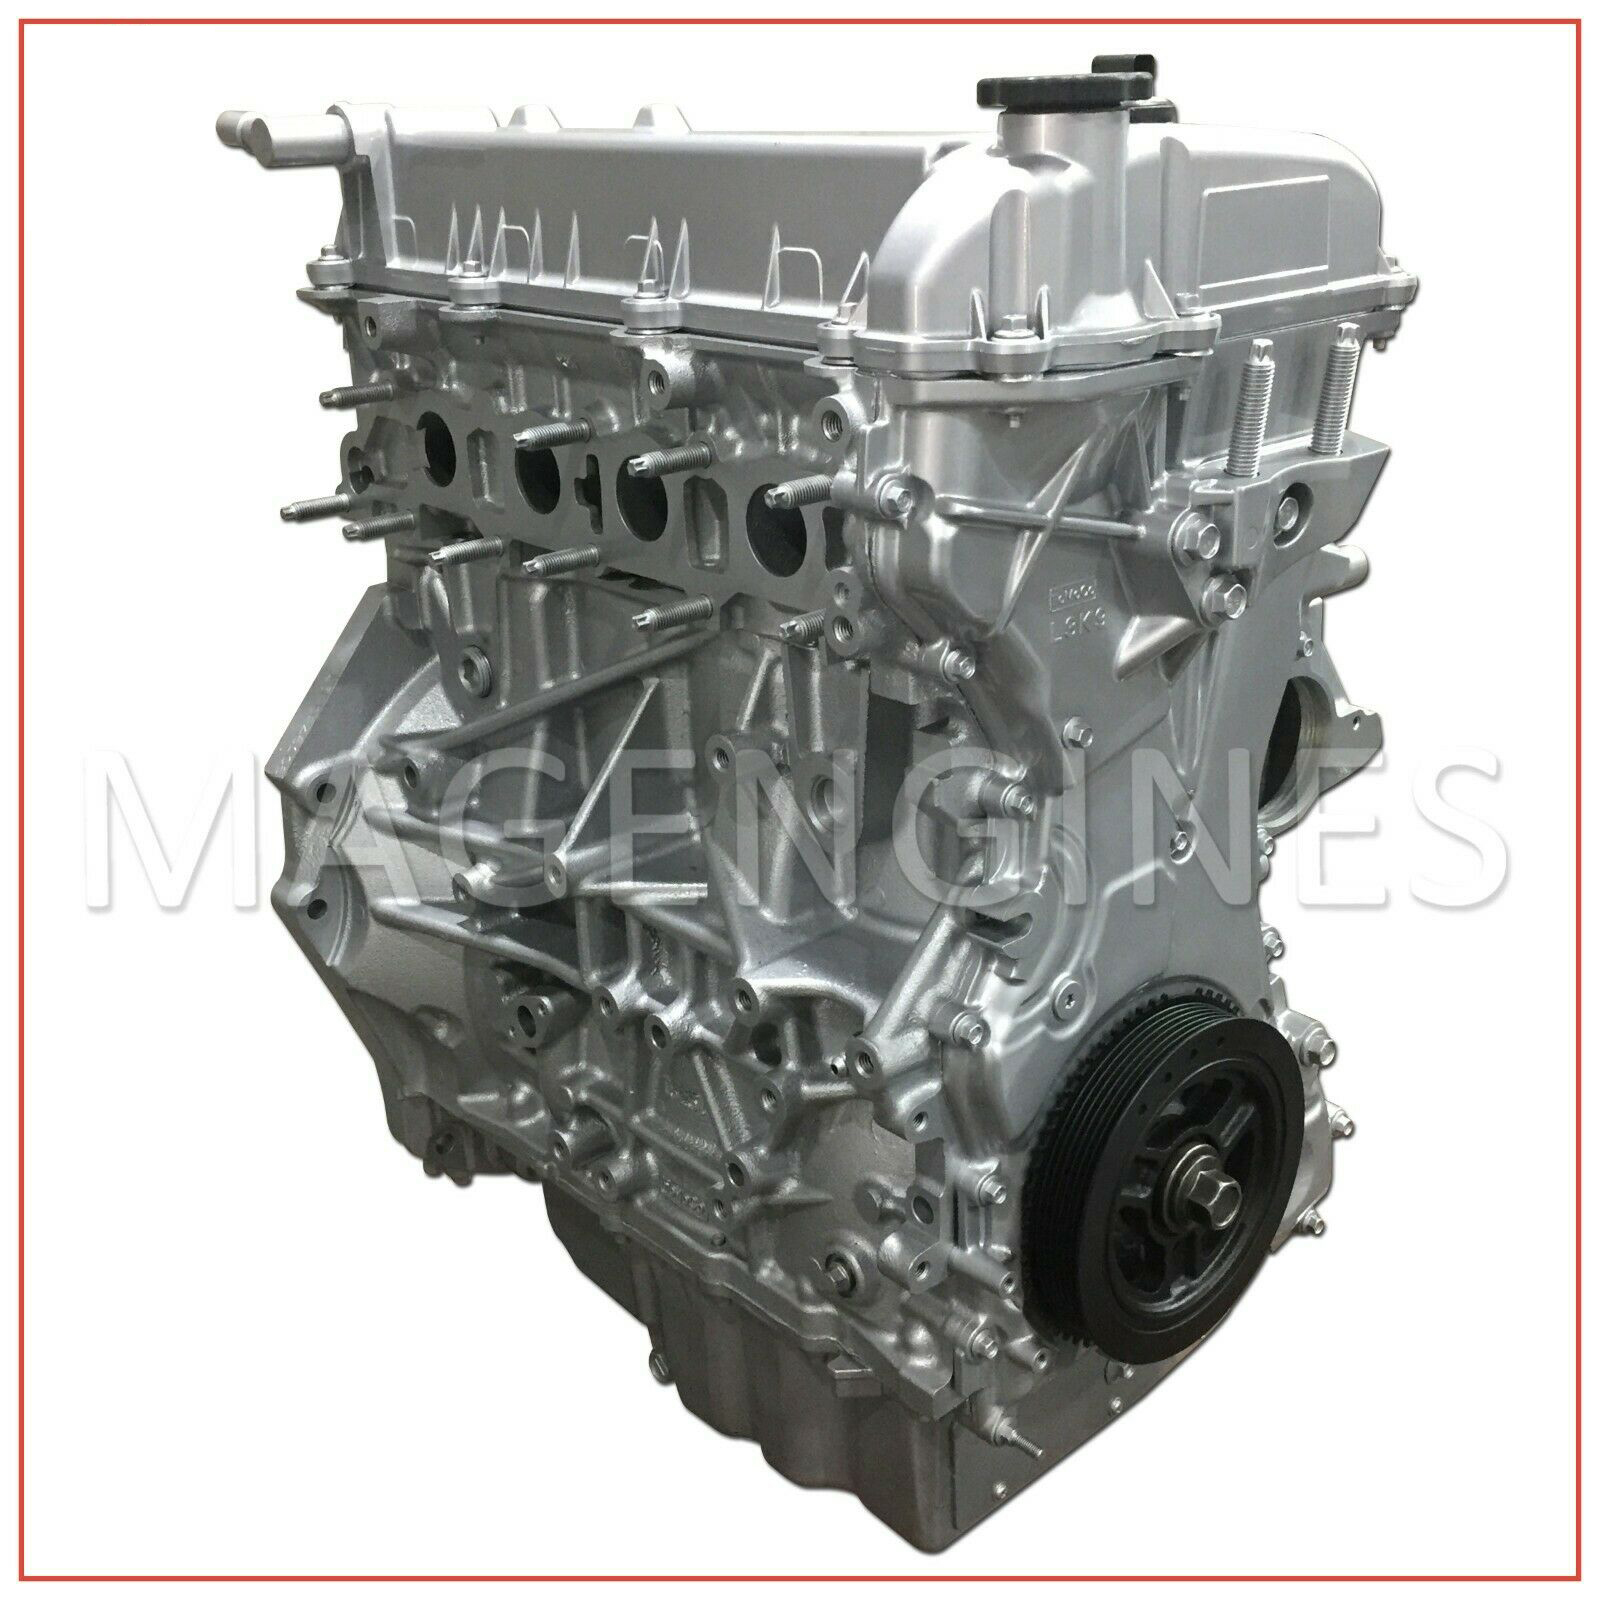 Двигатель мазда сх7 купить. Двигатель Mazda CX 7 l3 VDT. Двигатель l3 Mazda 2.3. Мазда l3 турбо. Мотор Мазда сх7 2.3 турбо.